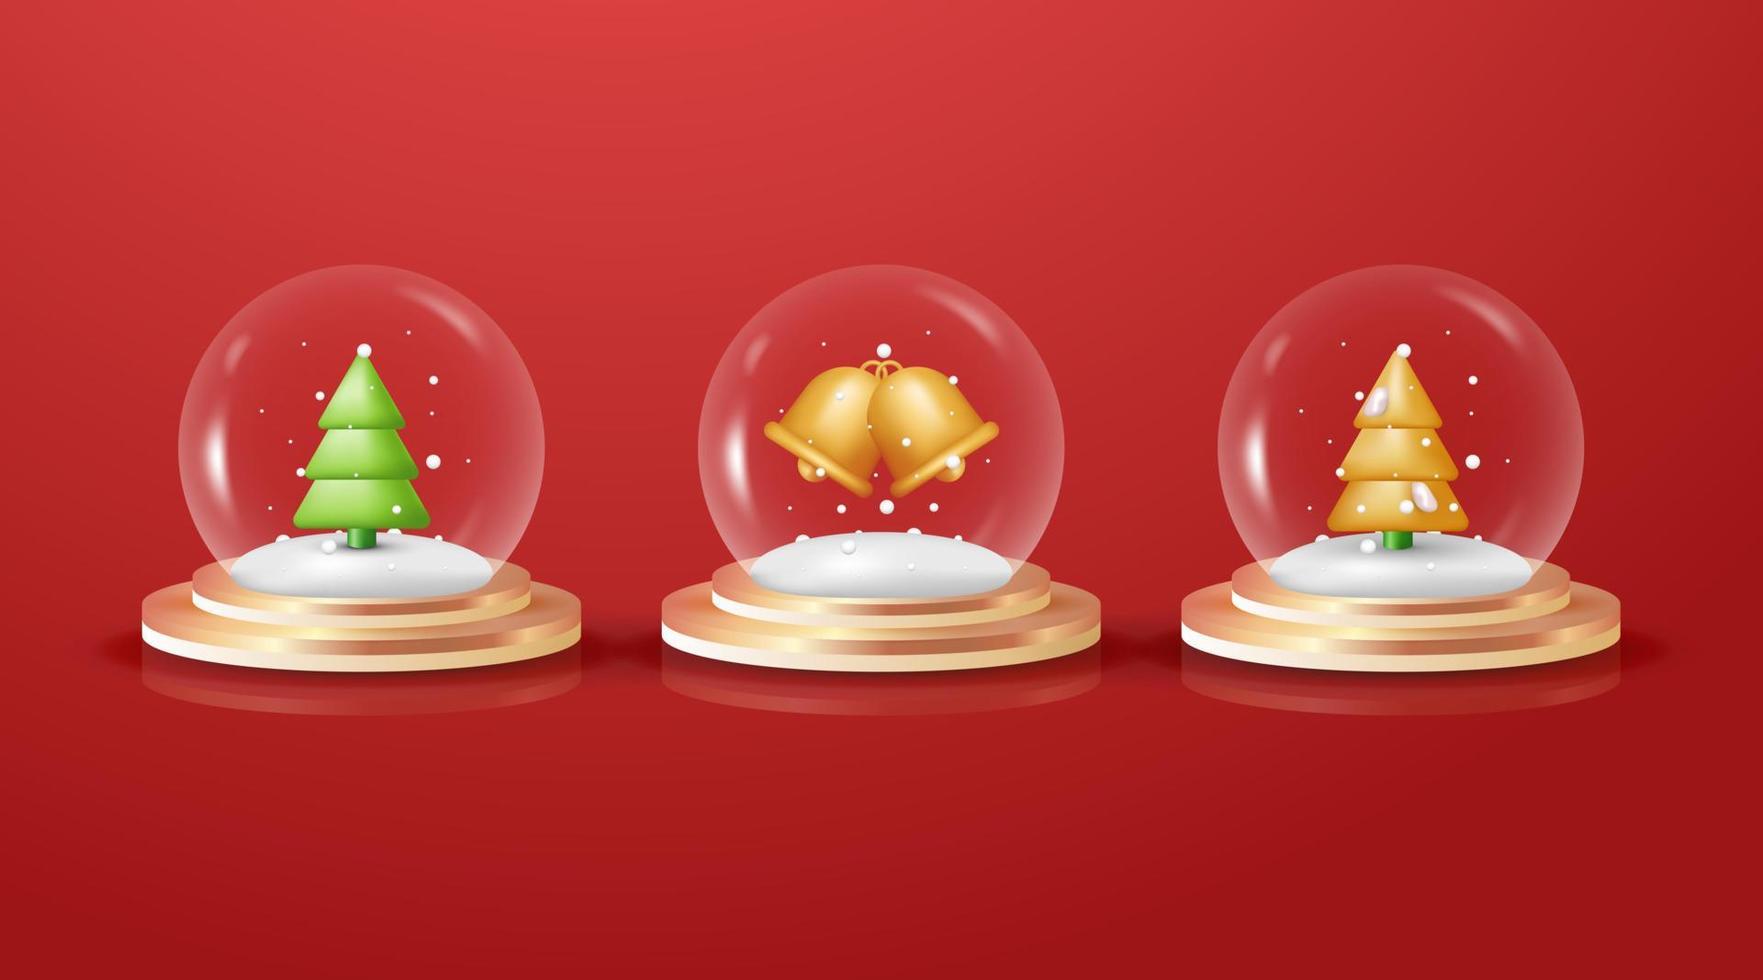 Diseño decorativo navideño 3d de globo de nieve de vidrio con podio dorado bajo una cúpula de vidrio transparente con nieve blanca, árbol de navidad dorado, aislado en fondo rojo vector